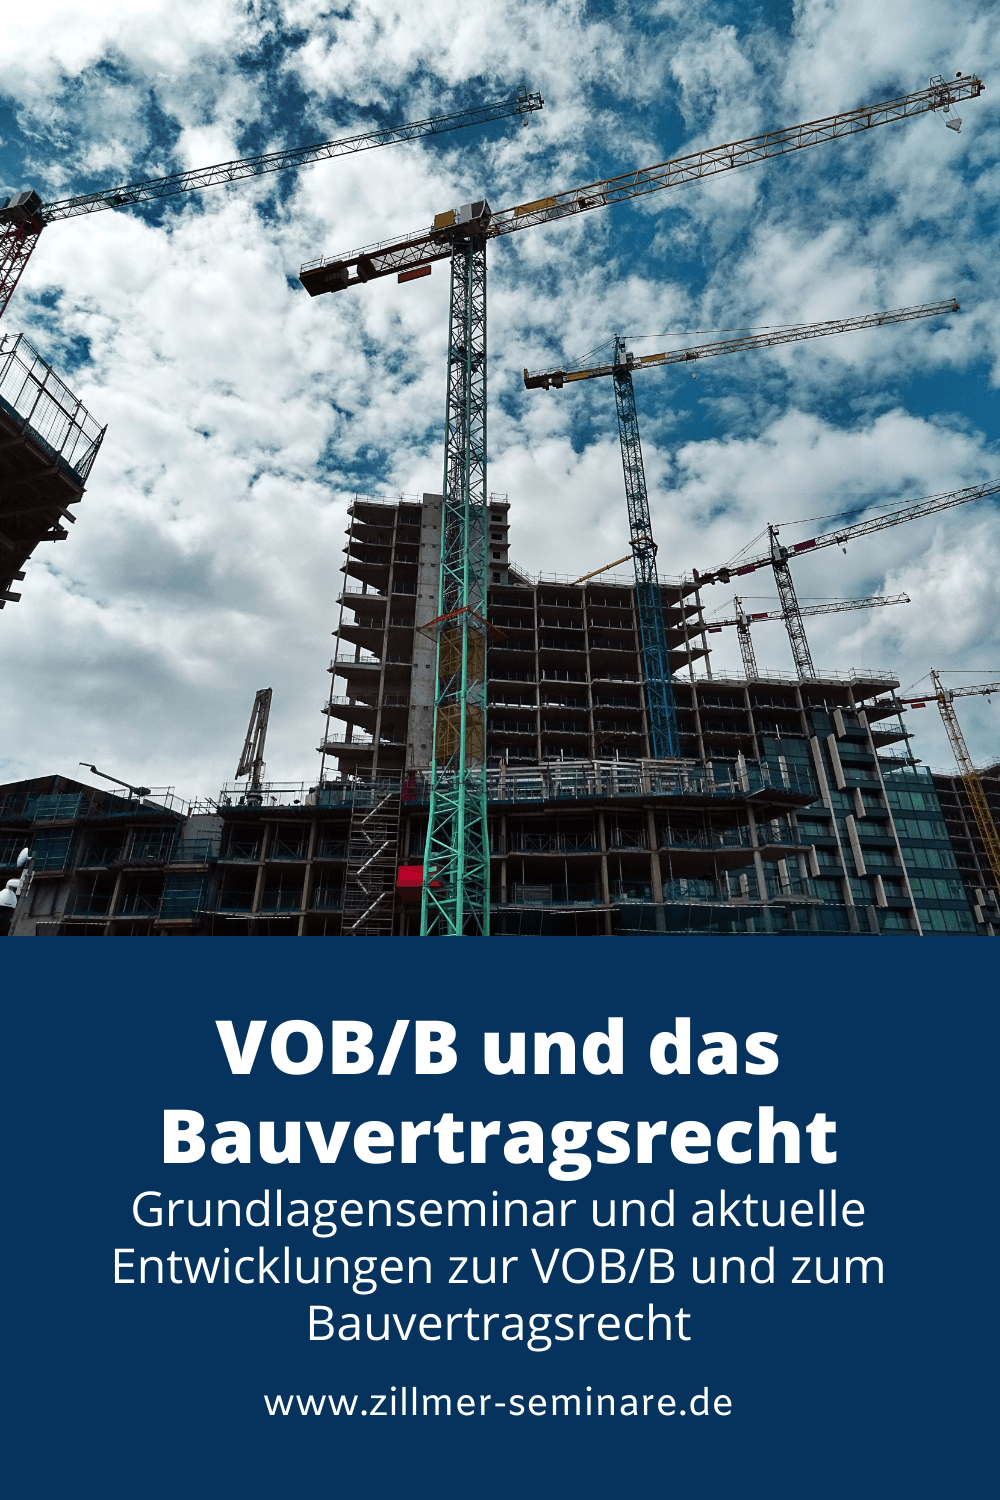 VOB/B und Bauvertragsrecht